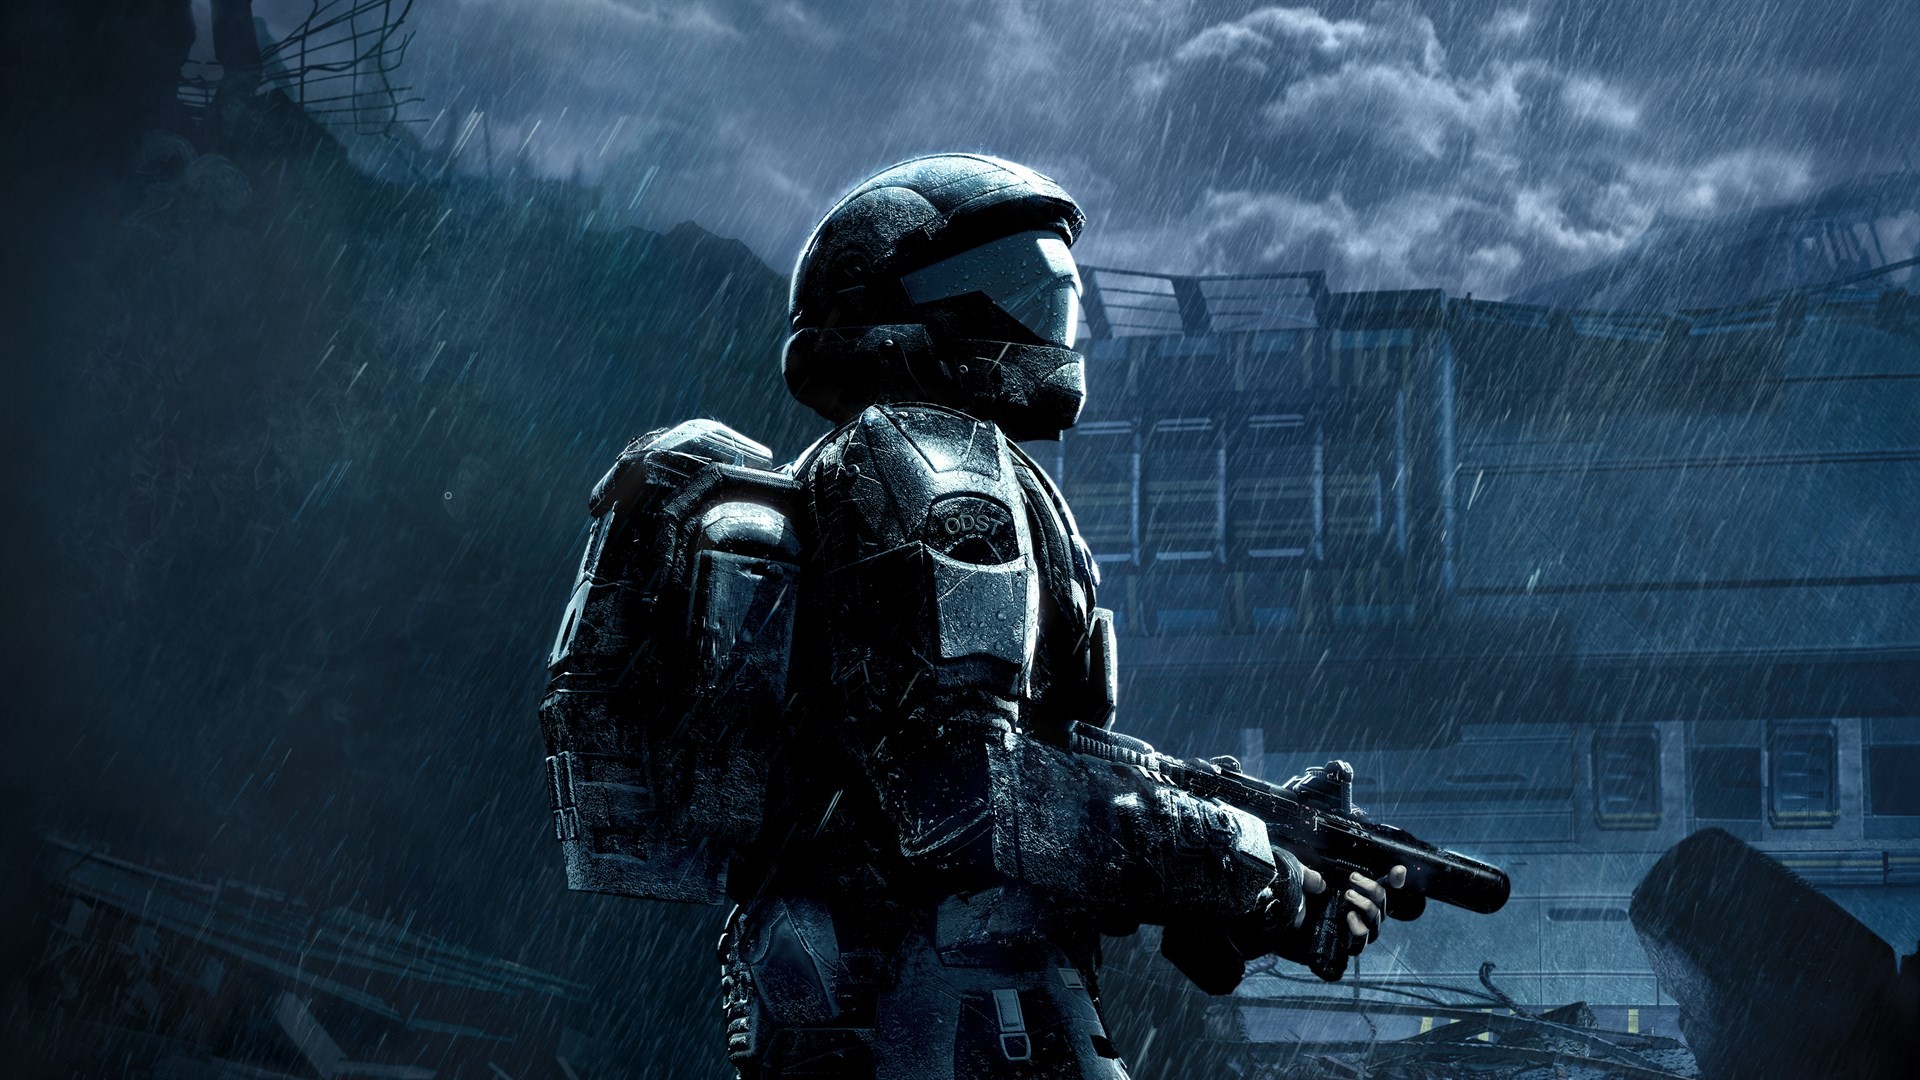 Halo 3: ODST, pour Orbital Drop Shock Troopers, le 22 septembre sur PC